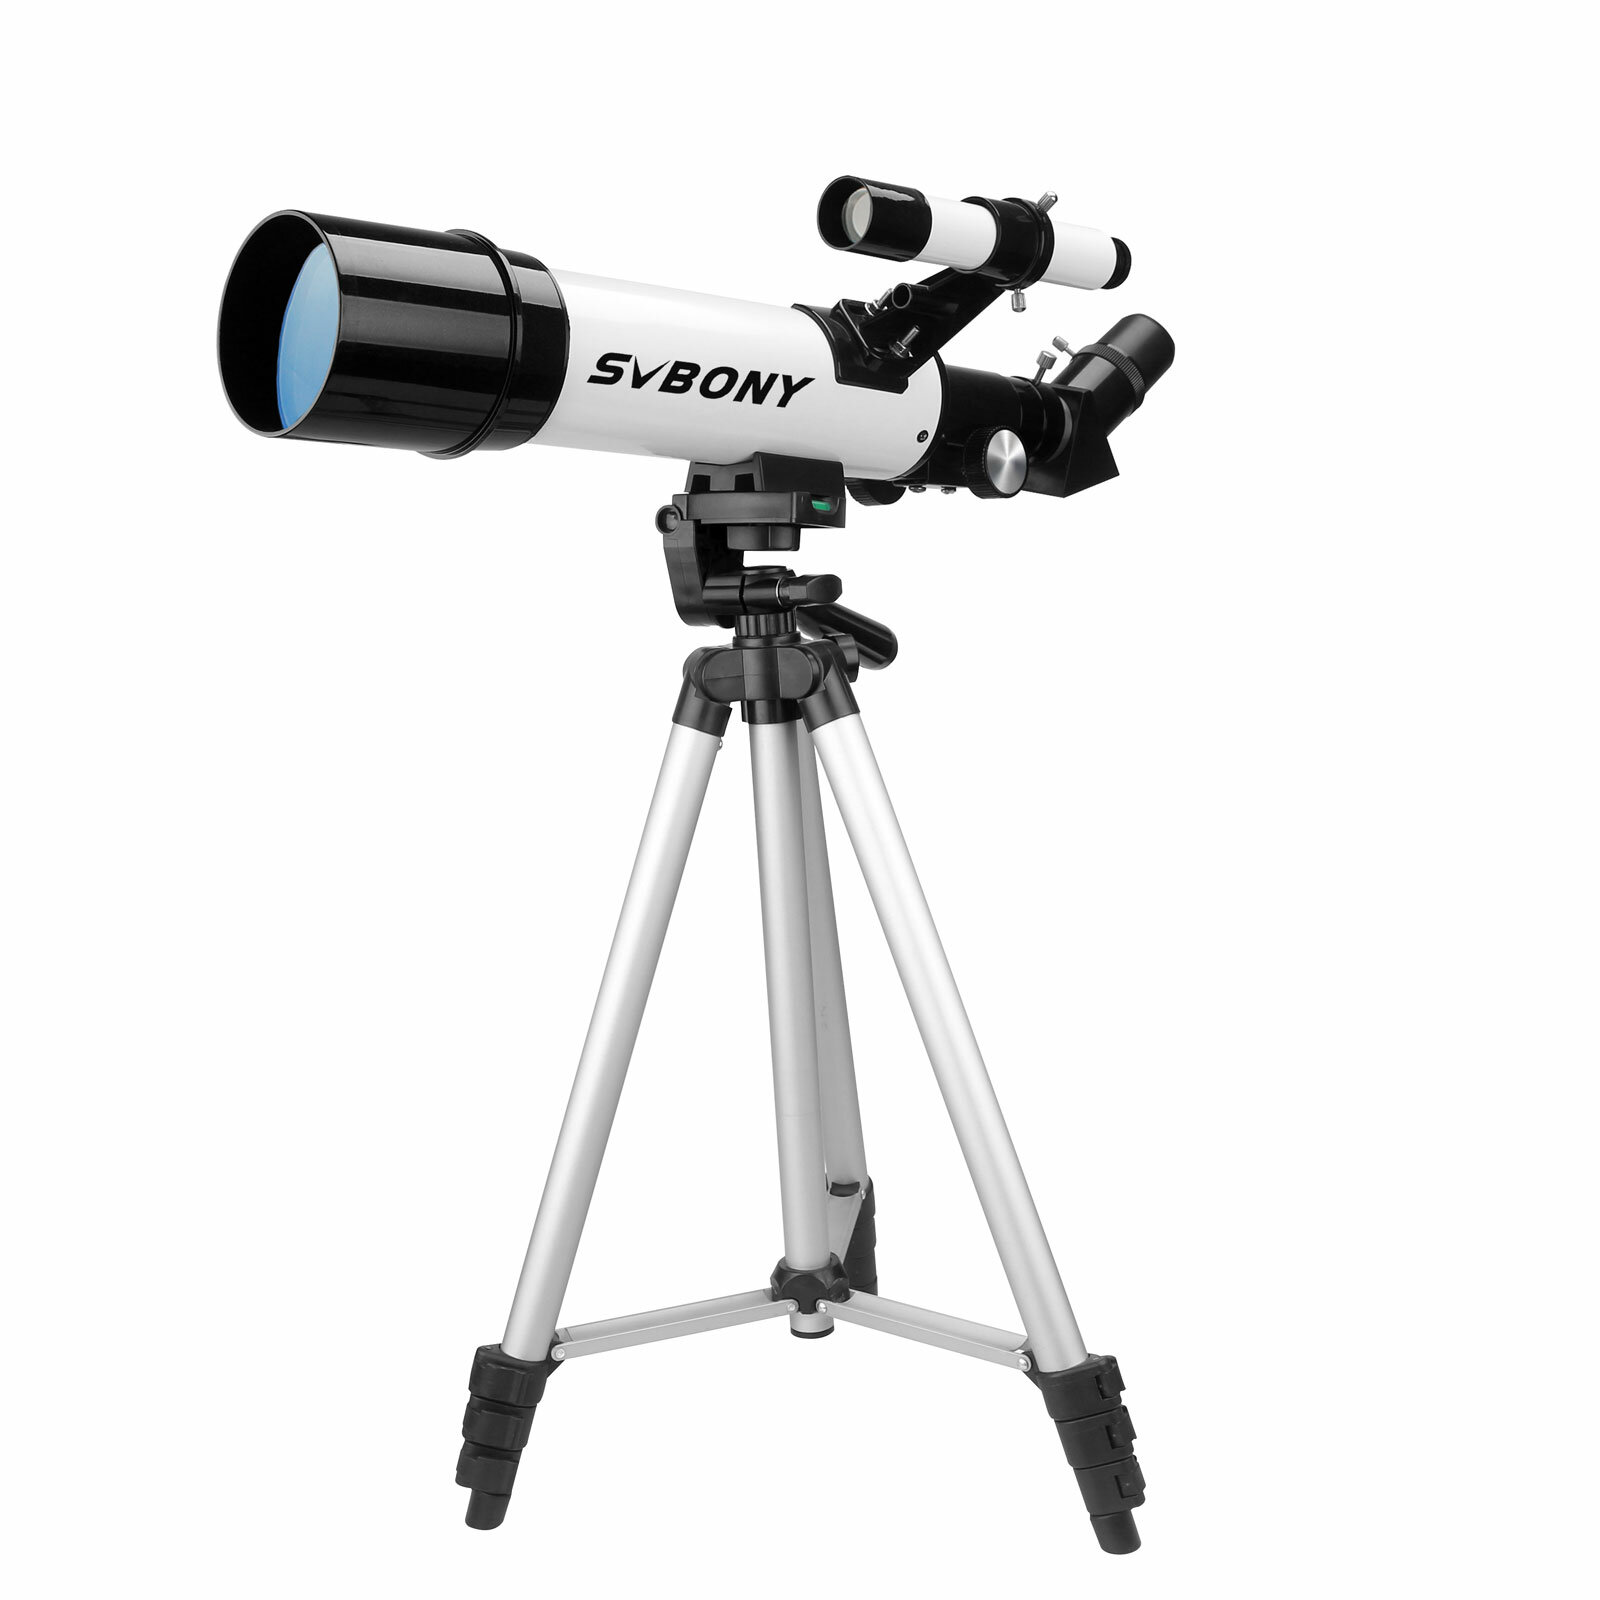 Refraktoros csillagászati távcső SVBONY SV501P 60/400 mm-es lencsével és okulártartóval kezdő felnőttek számára a szabadban.